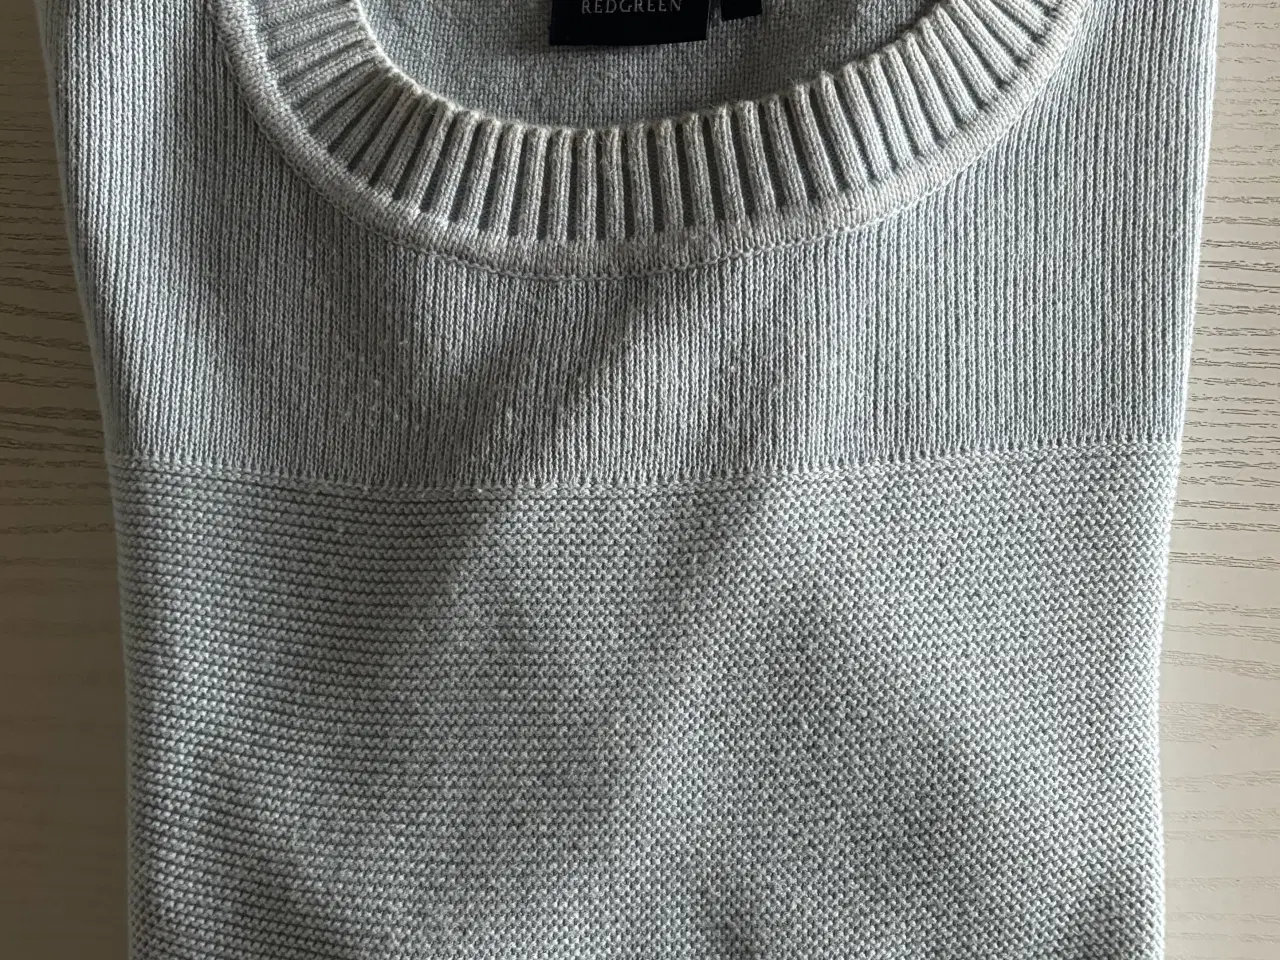 Billede 1 - Sweater, REDGREEN str. XL